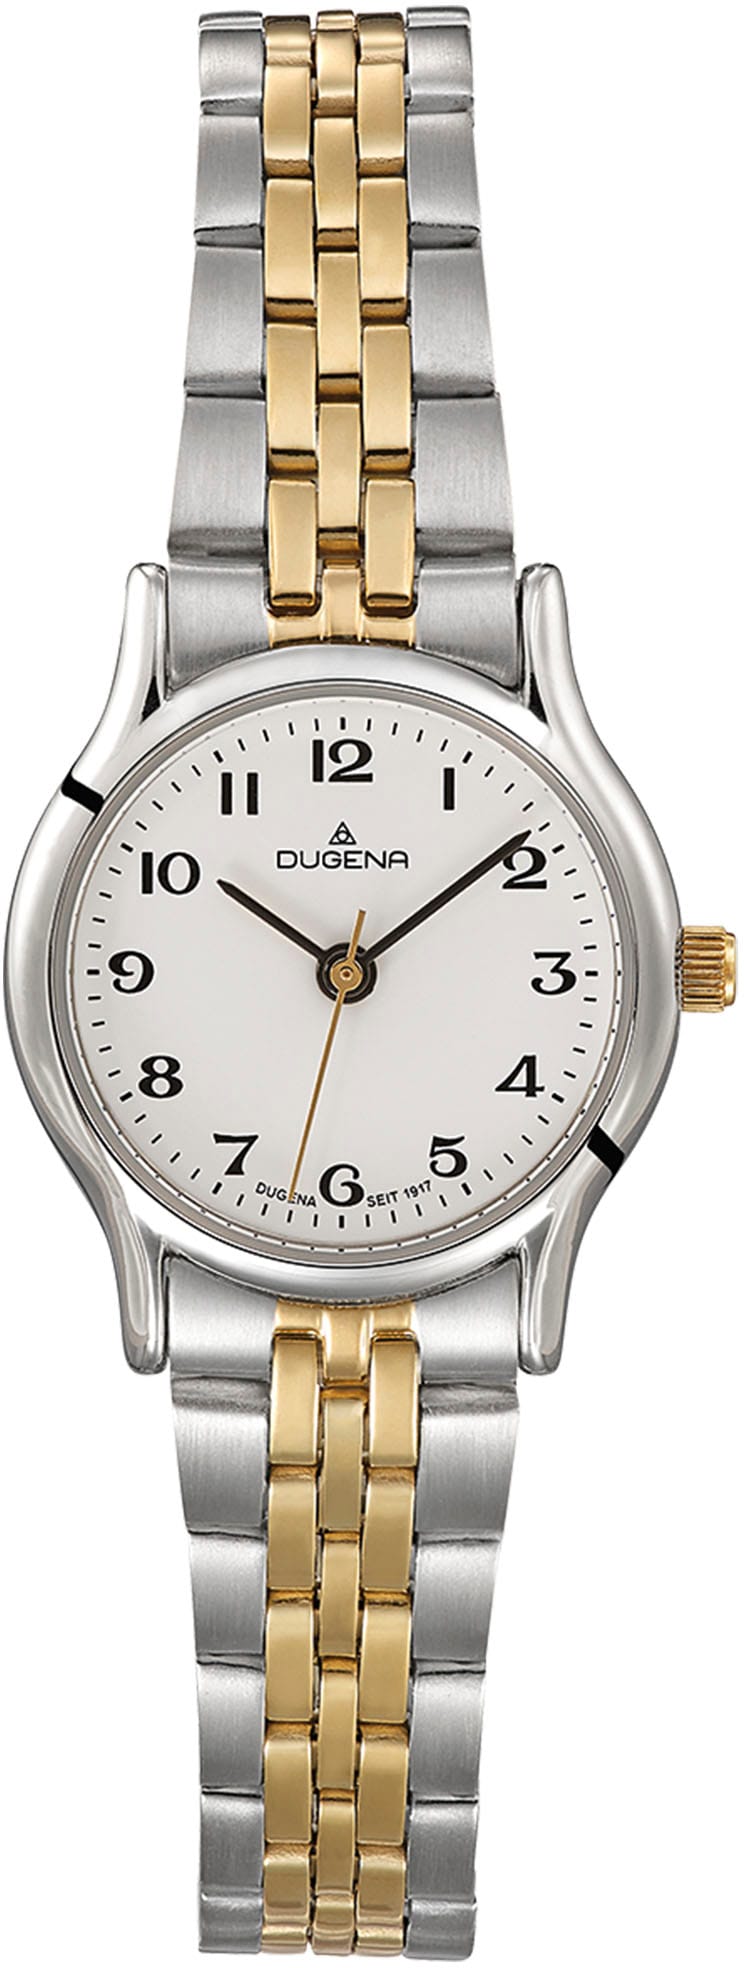 Dugena Online-Shop » Dugena | Uhren BAUR kaufen